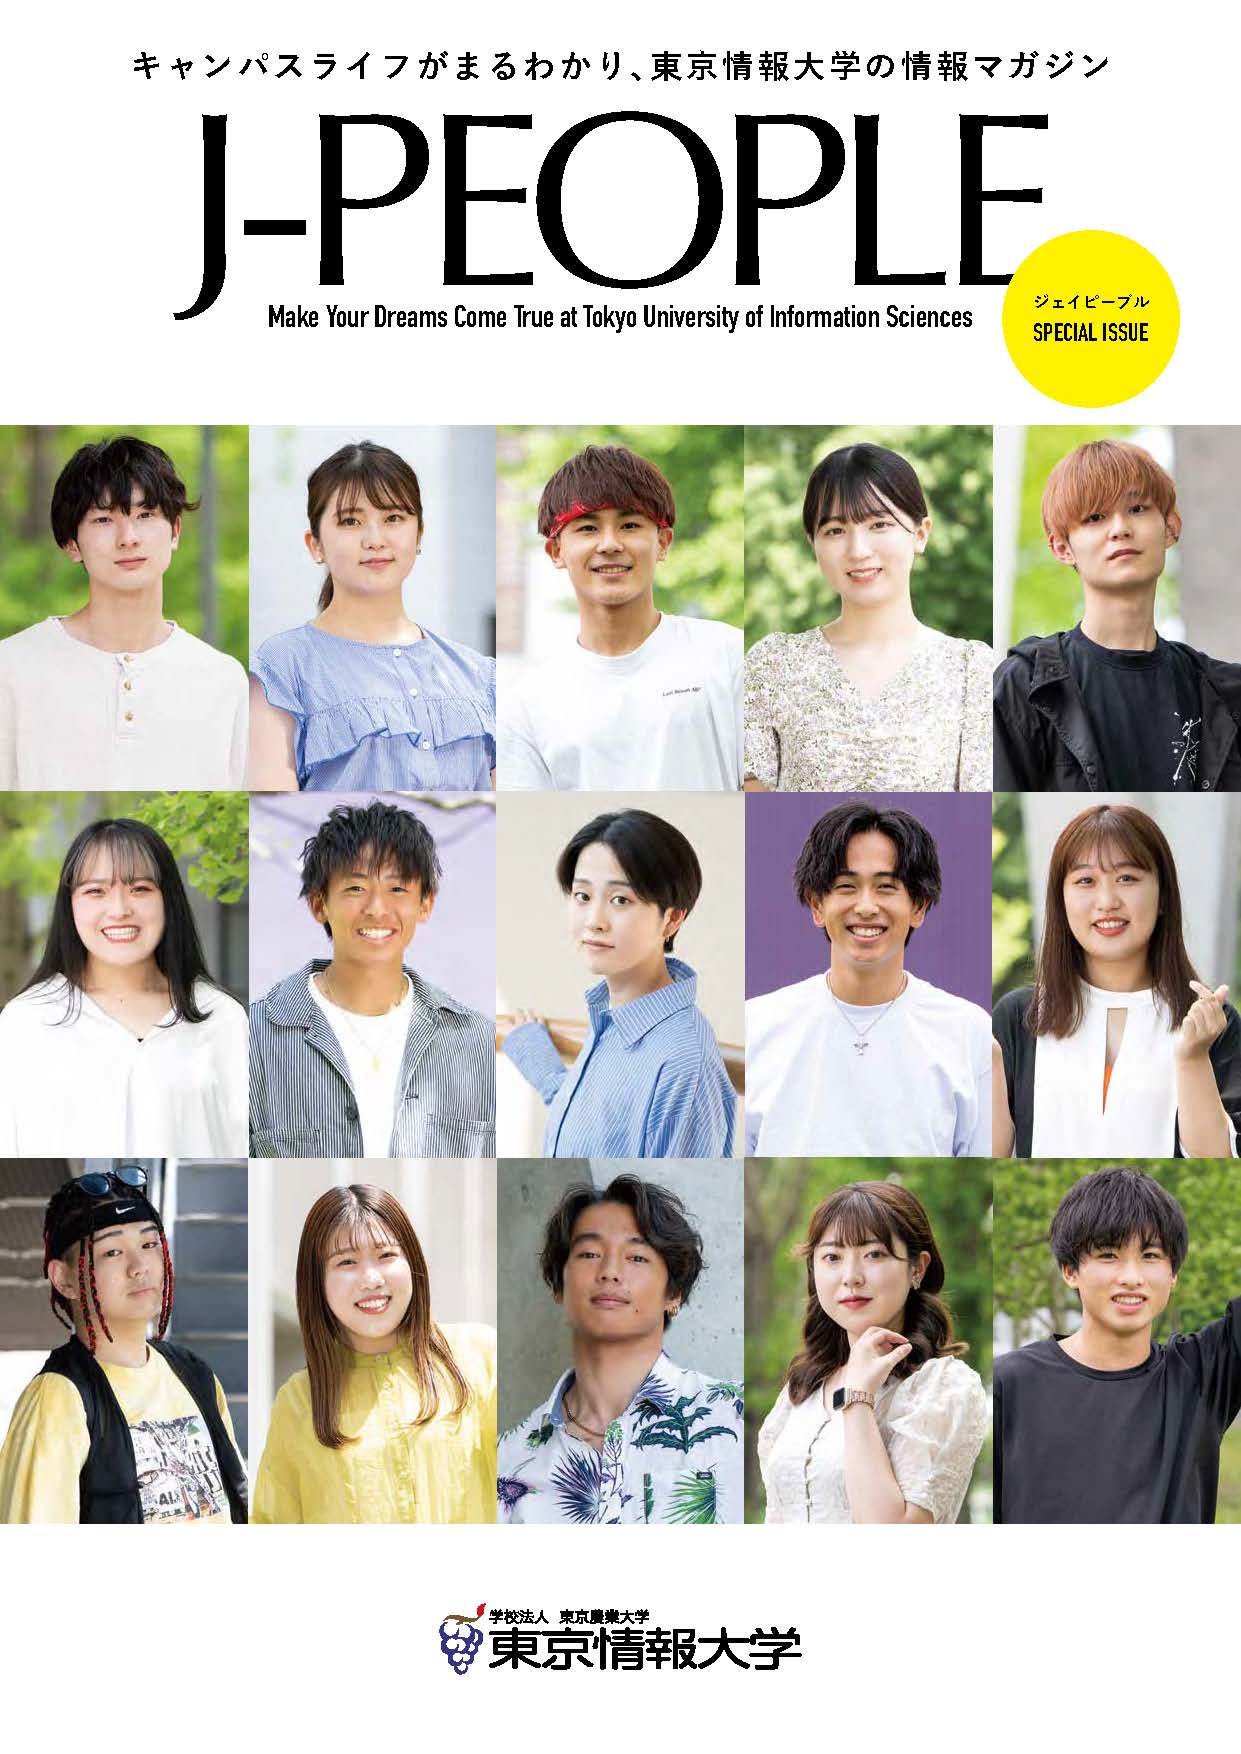 東京情報大学の情報マガジン「J-PEOPLE」